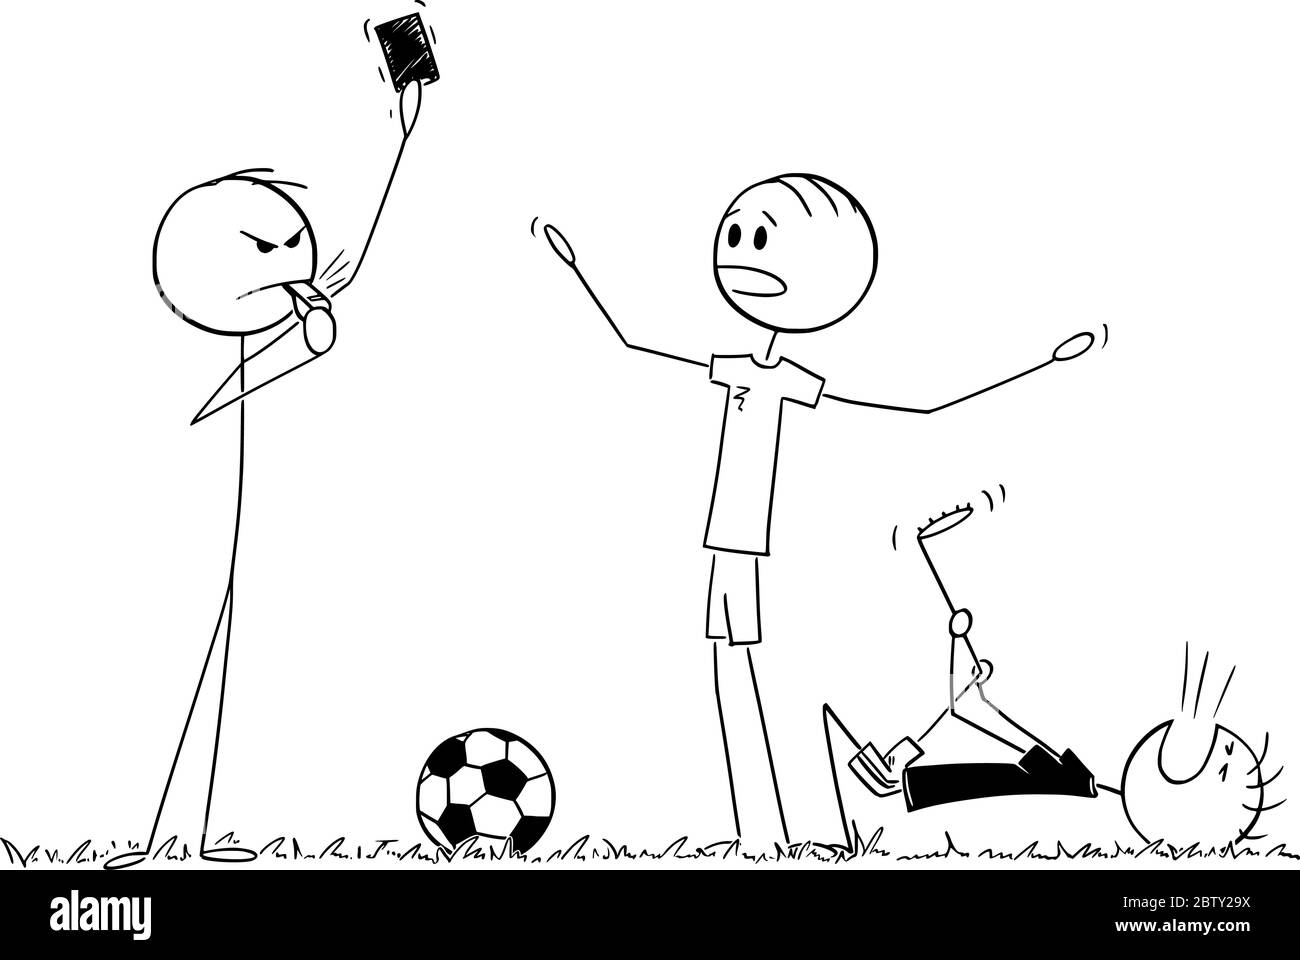 Vektor Cartoon Stick Figur Zeichnung konzeptionelle Illustration von ernsten Fußball oder Fußball Schiedsrichter zeigt rote Karte für Spieler. Stock Vektor